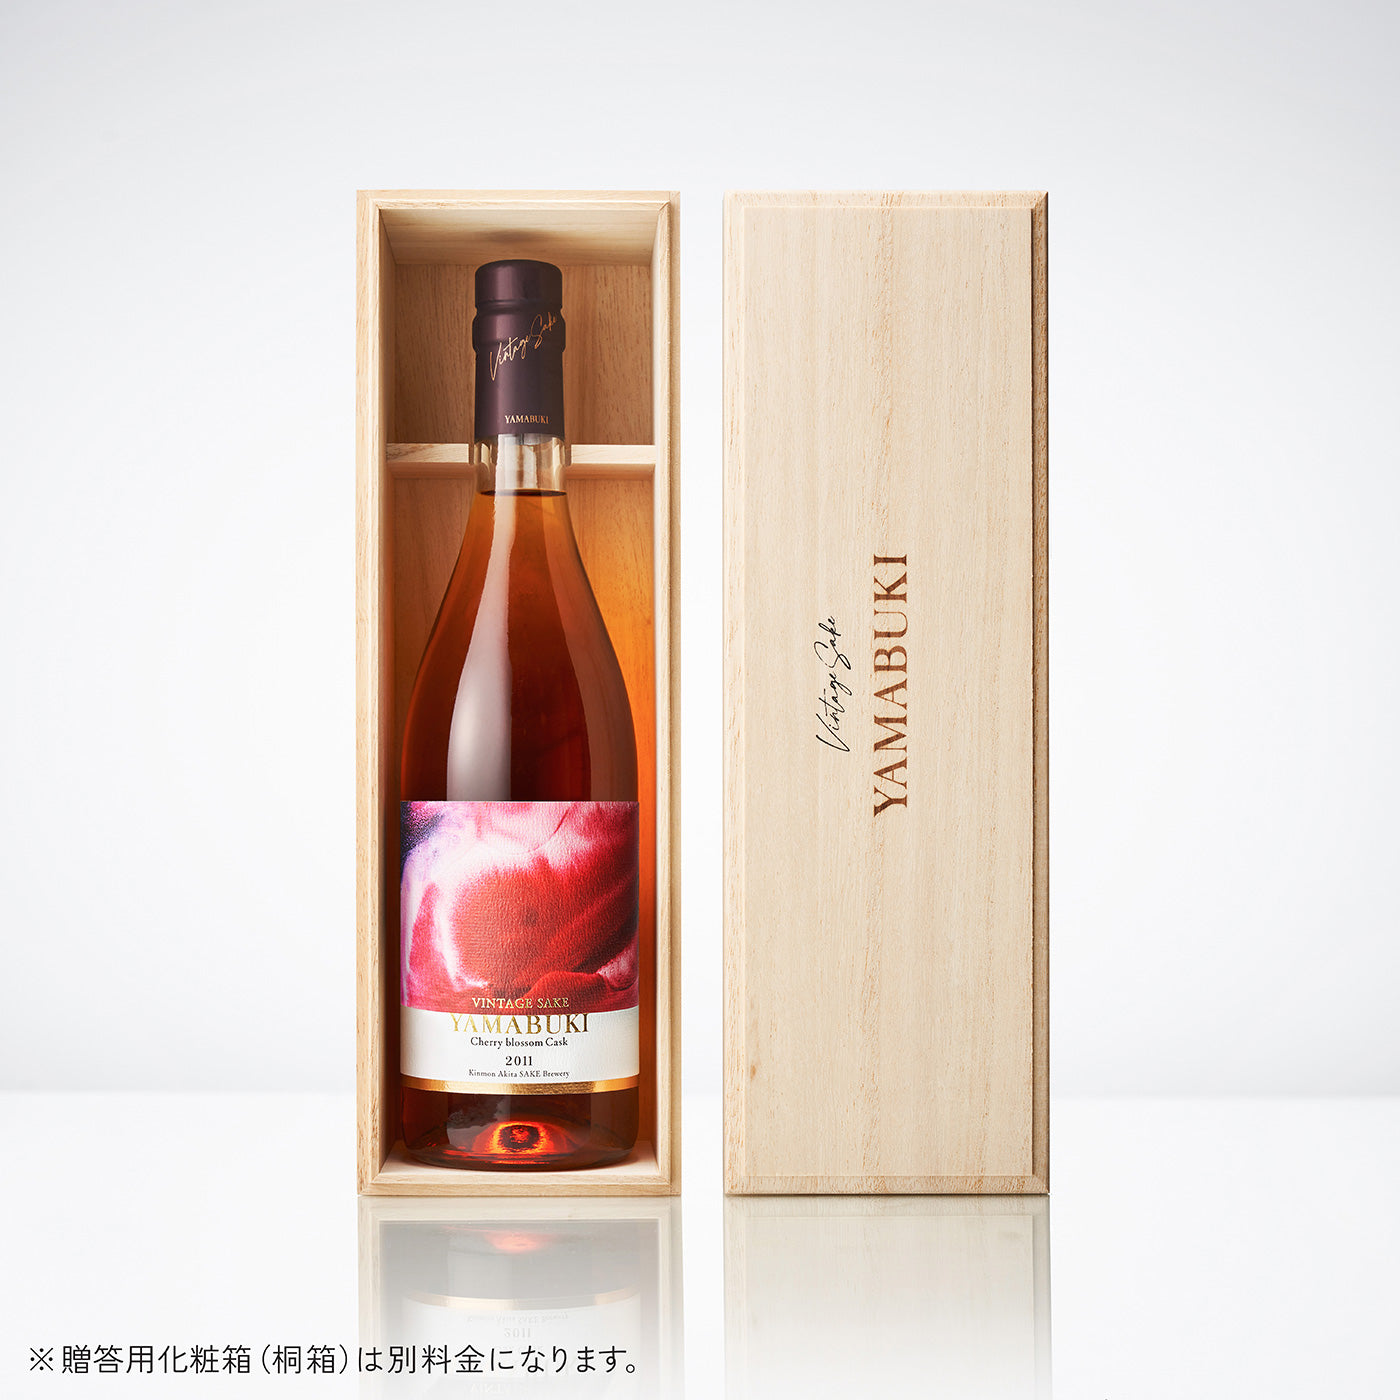 
                  
                    熟成酒 YAMABUKI 桜樽熟成 / VINTAGE SAKE YAMABUKI Cherry Blossom Cask 720ml
                  
                